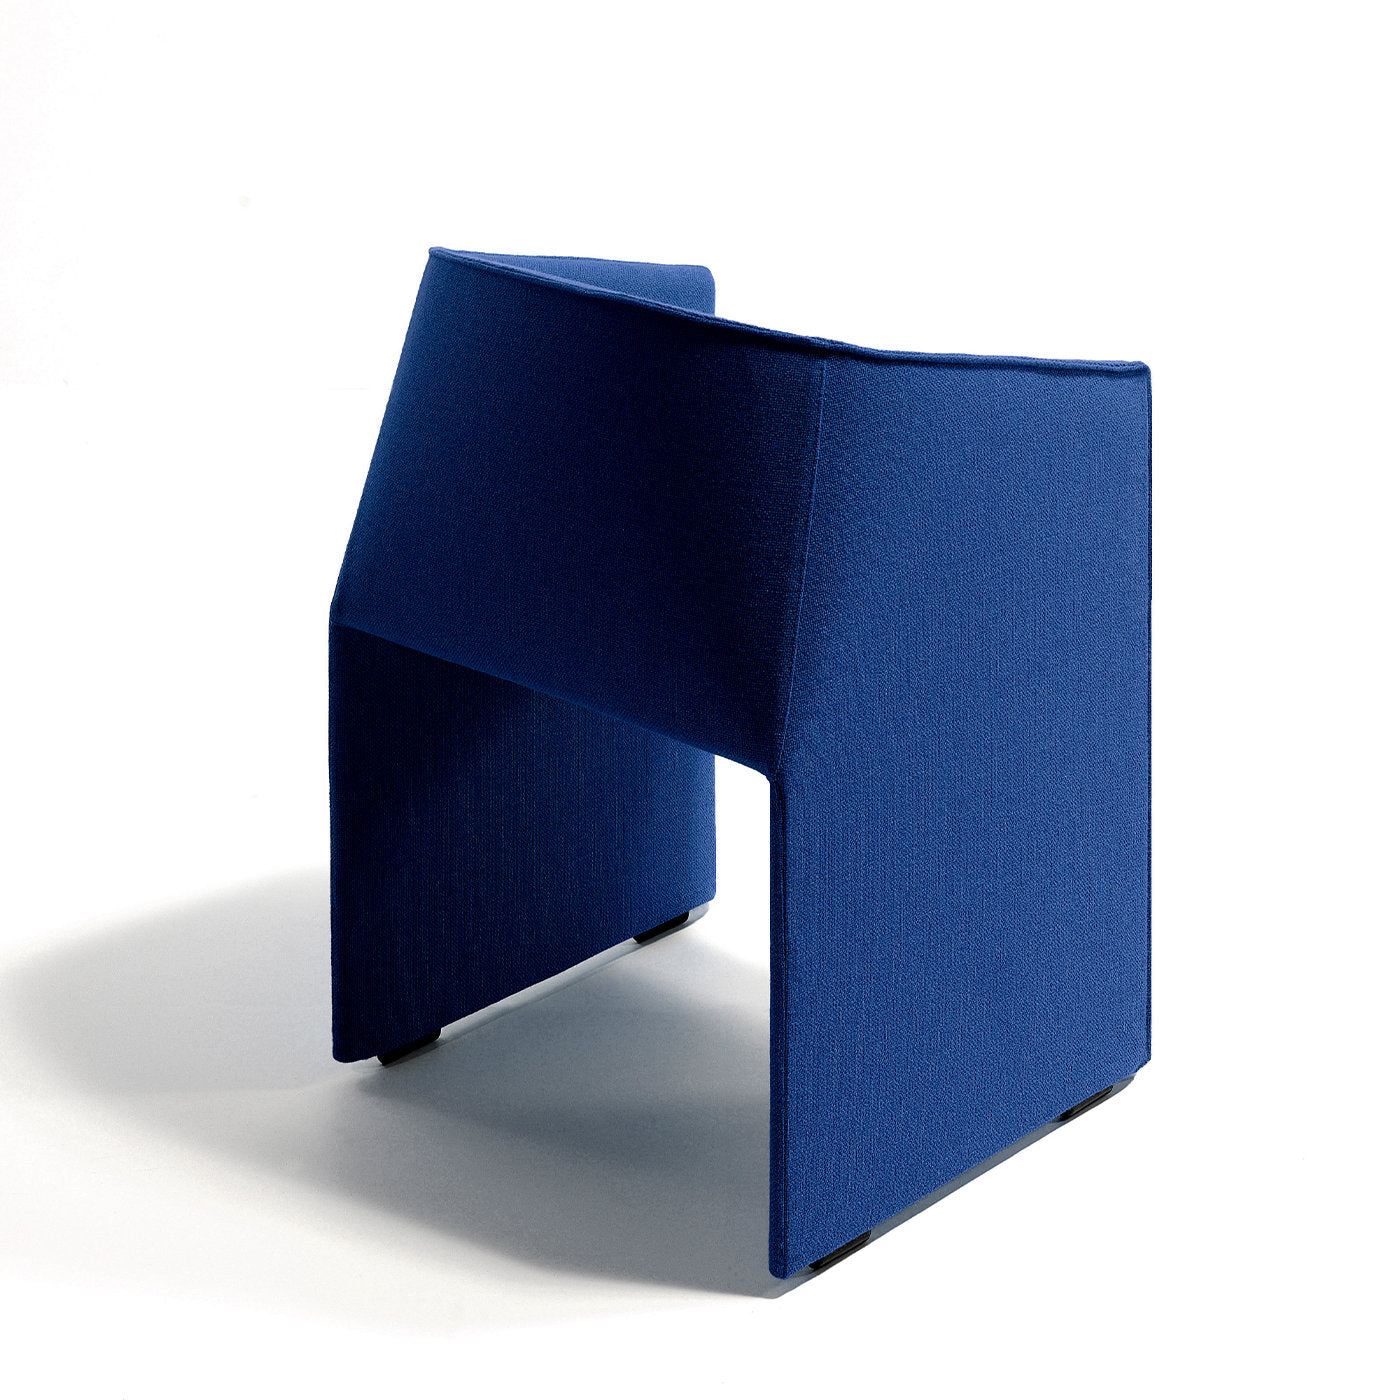 Plau Blue Tall on feet chair by Gabriele and Oscar Buratti - Alternative view 2